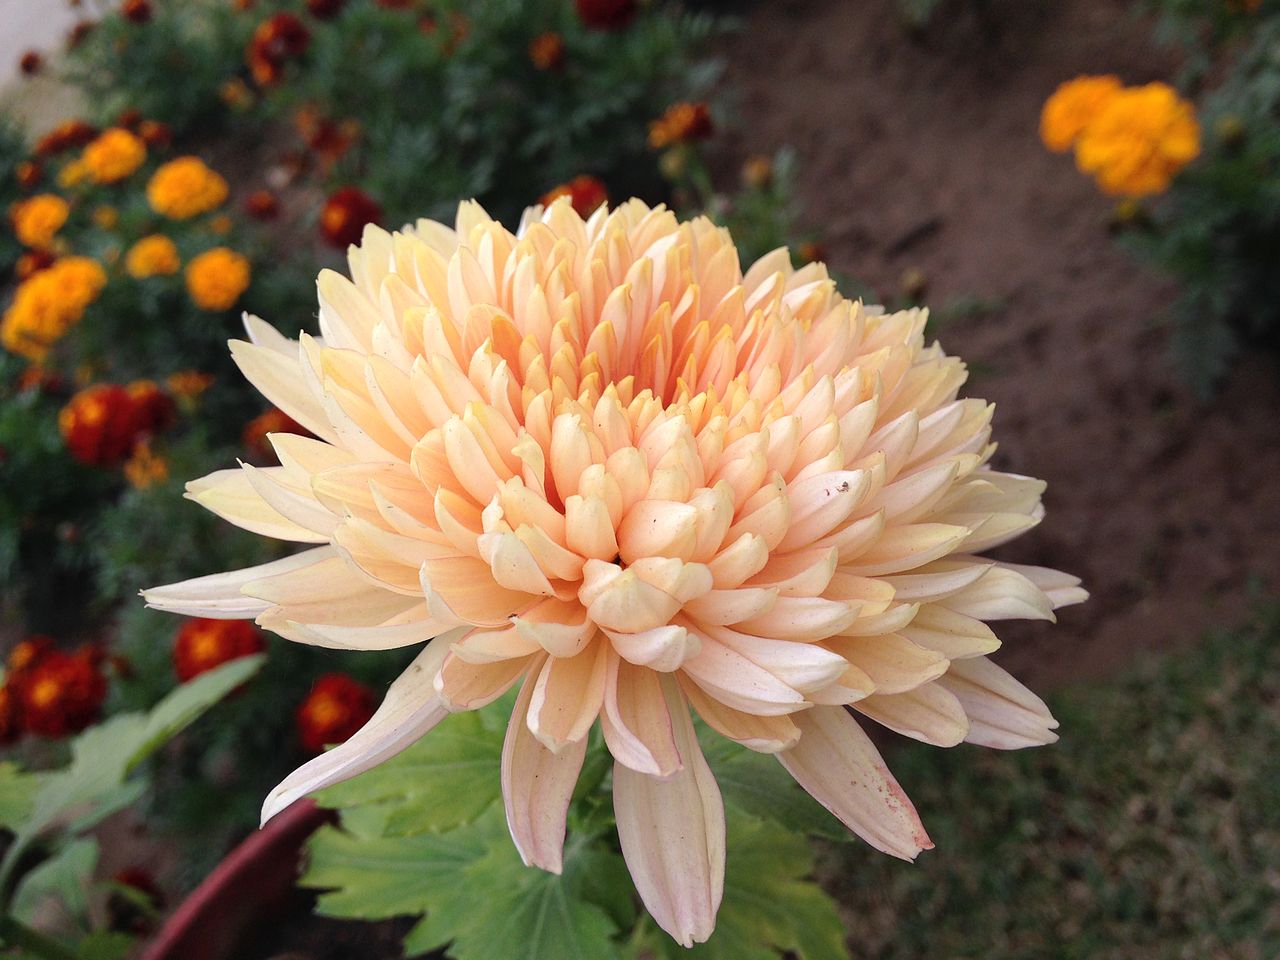 Beautiful Chrysanthemum. Image by Satdeep Gill